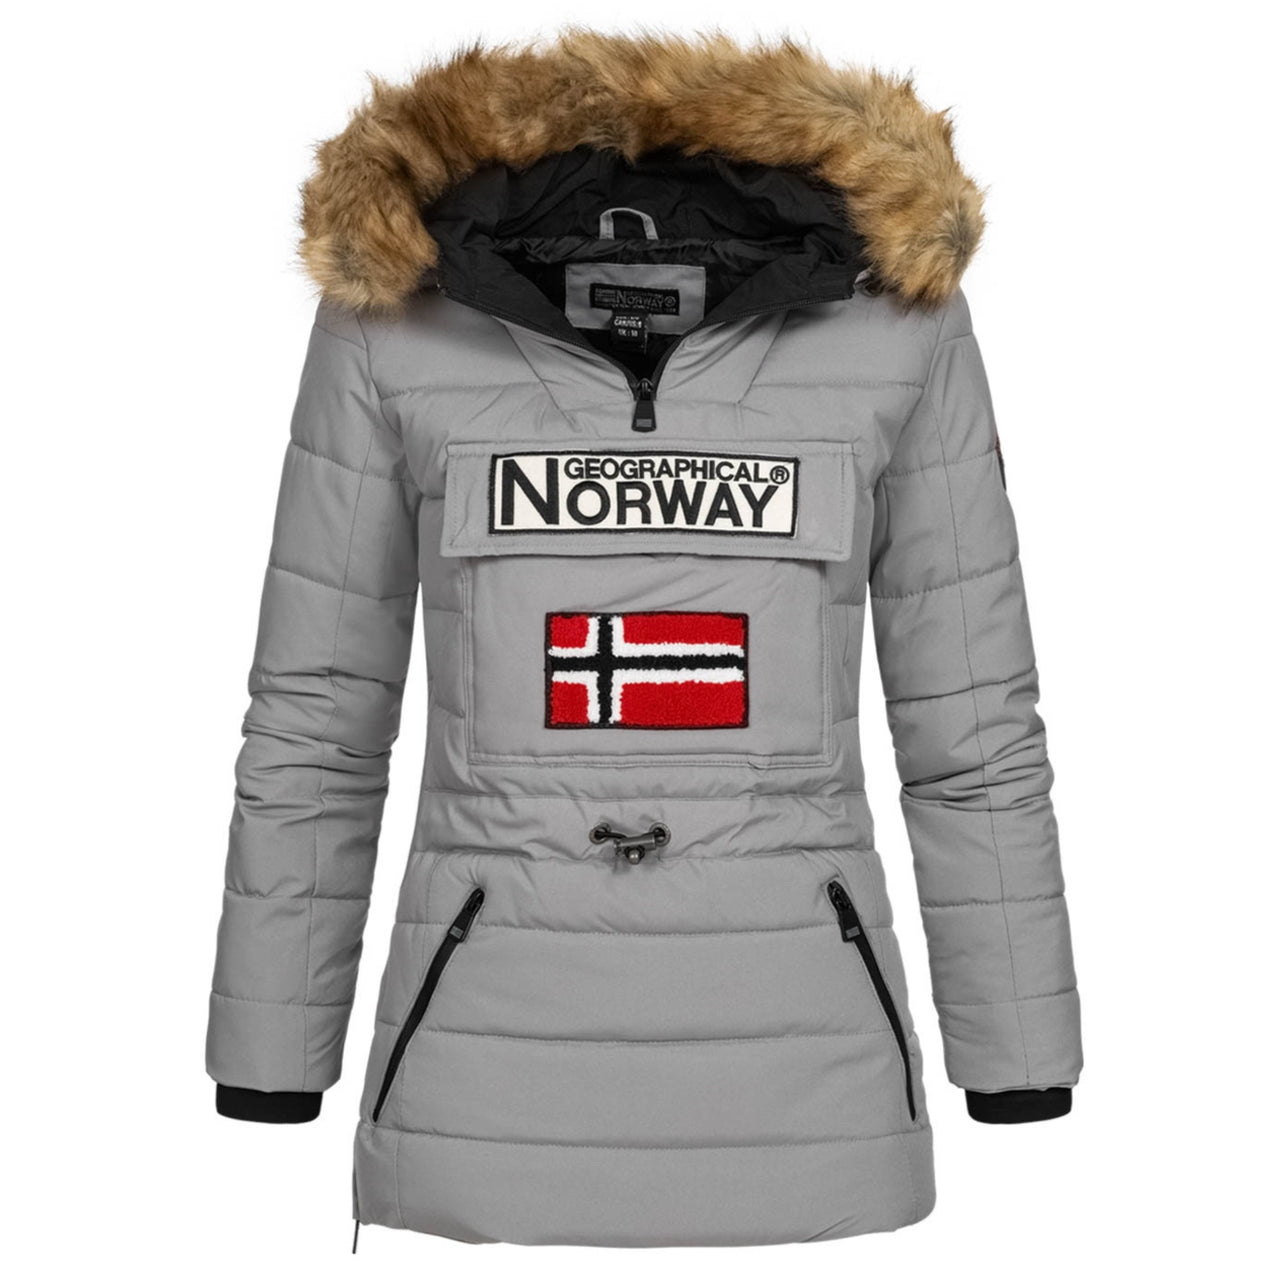 Norway Überziehen zum Jacken – Geographical